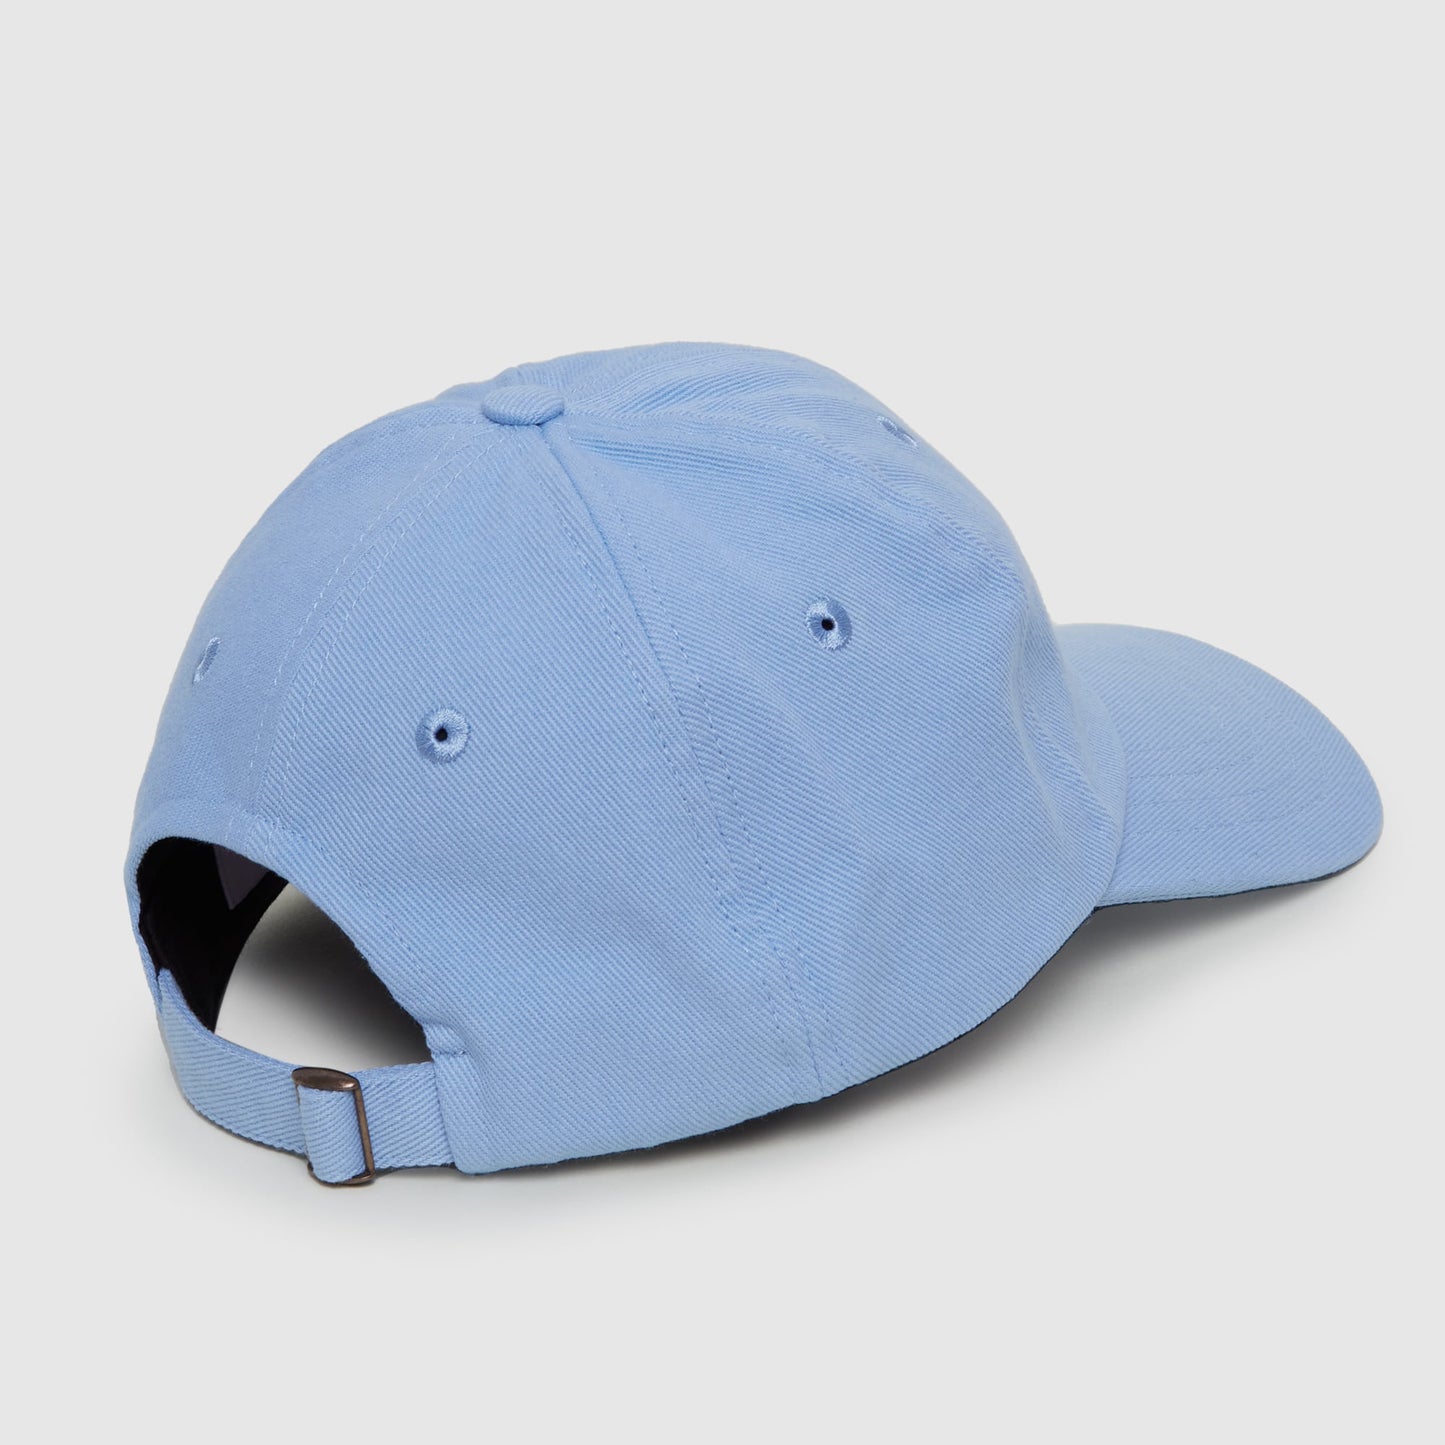 La casquette bleue